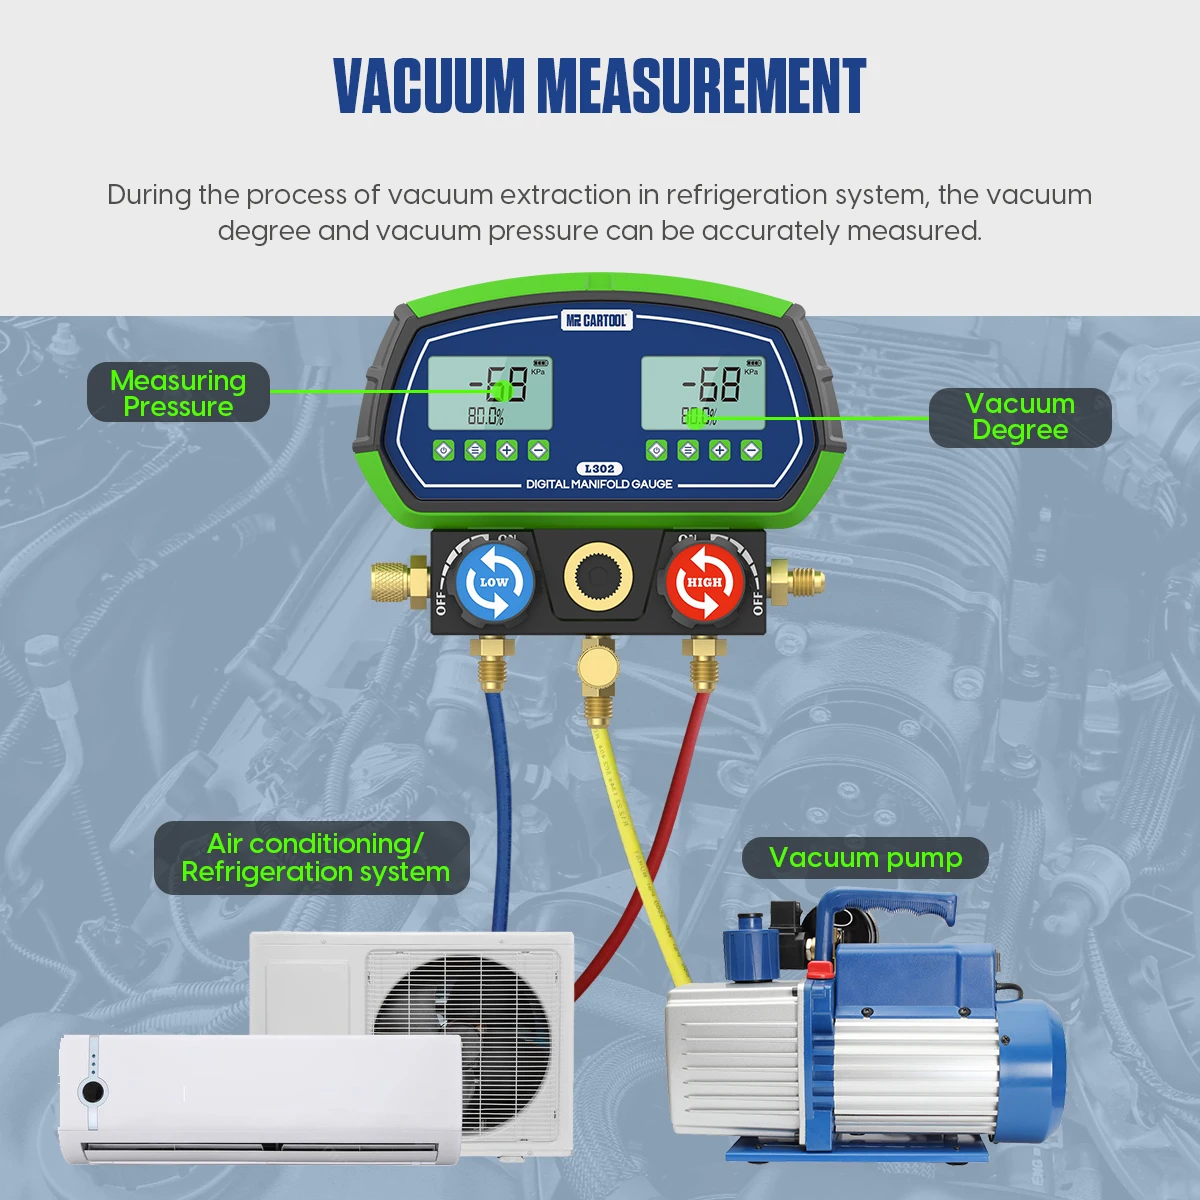 vacuum measurement